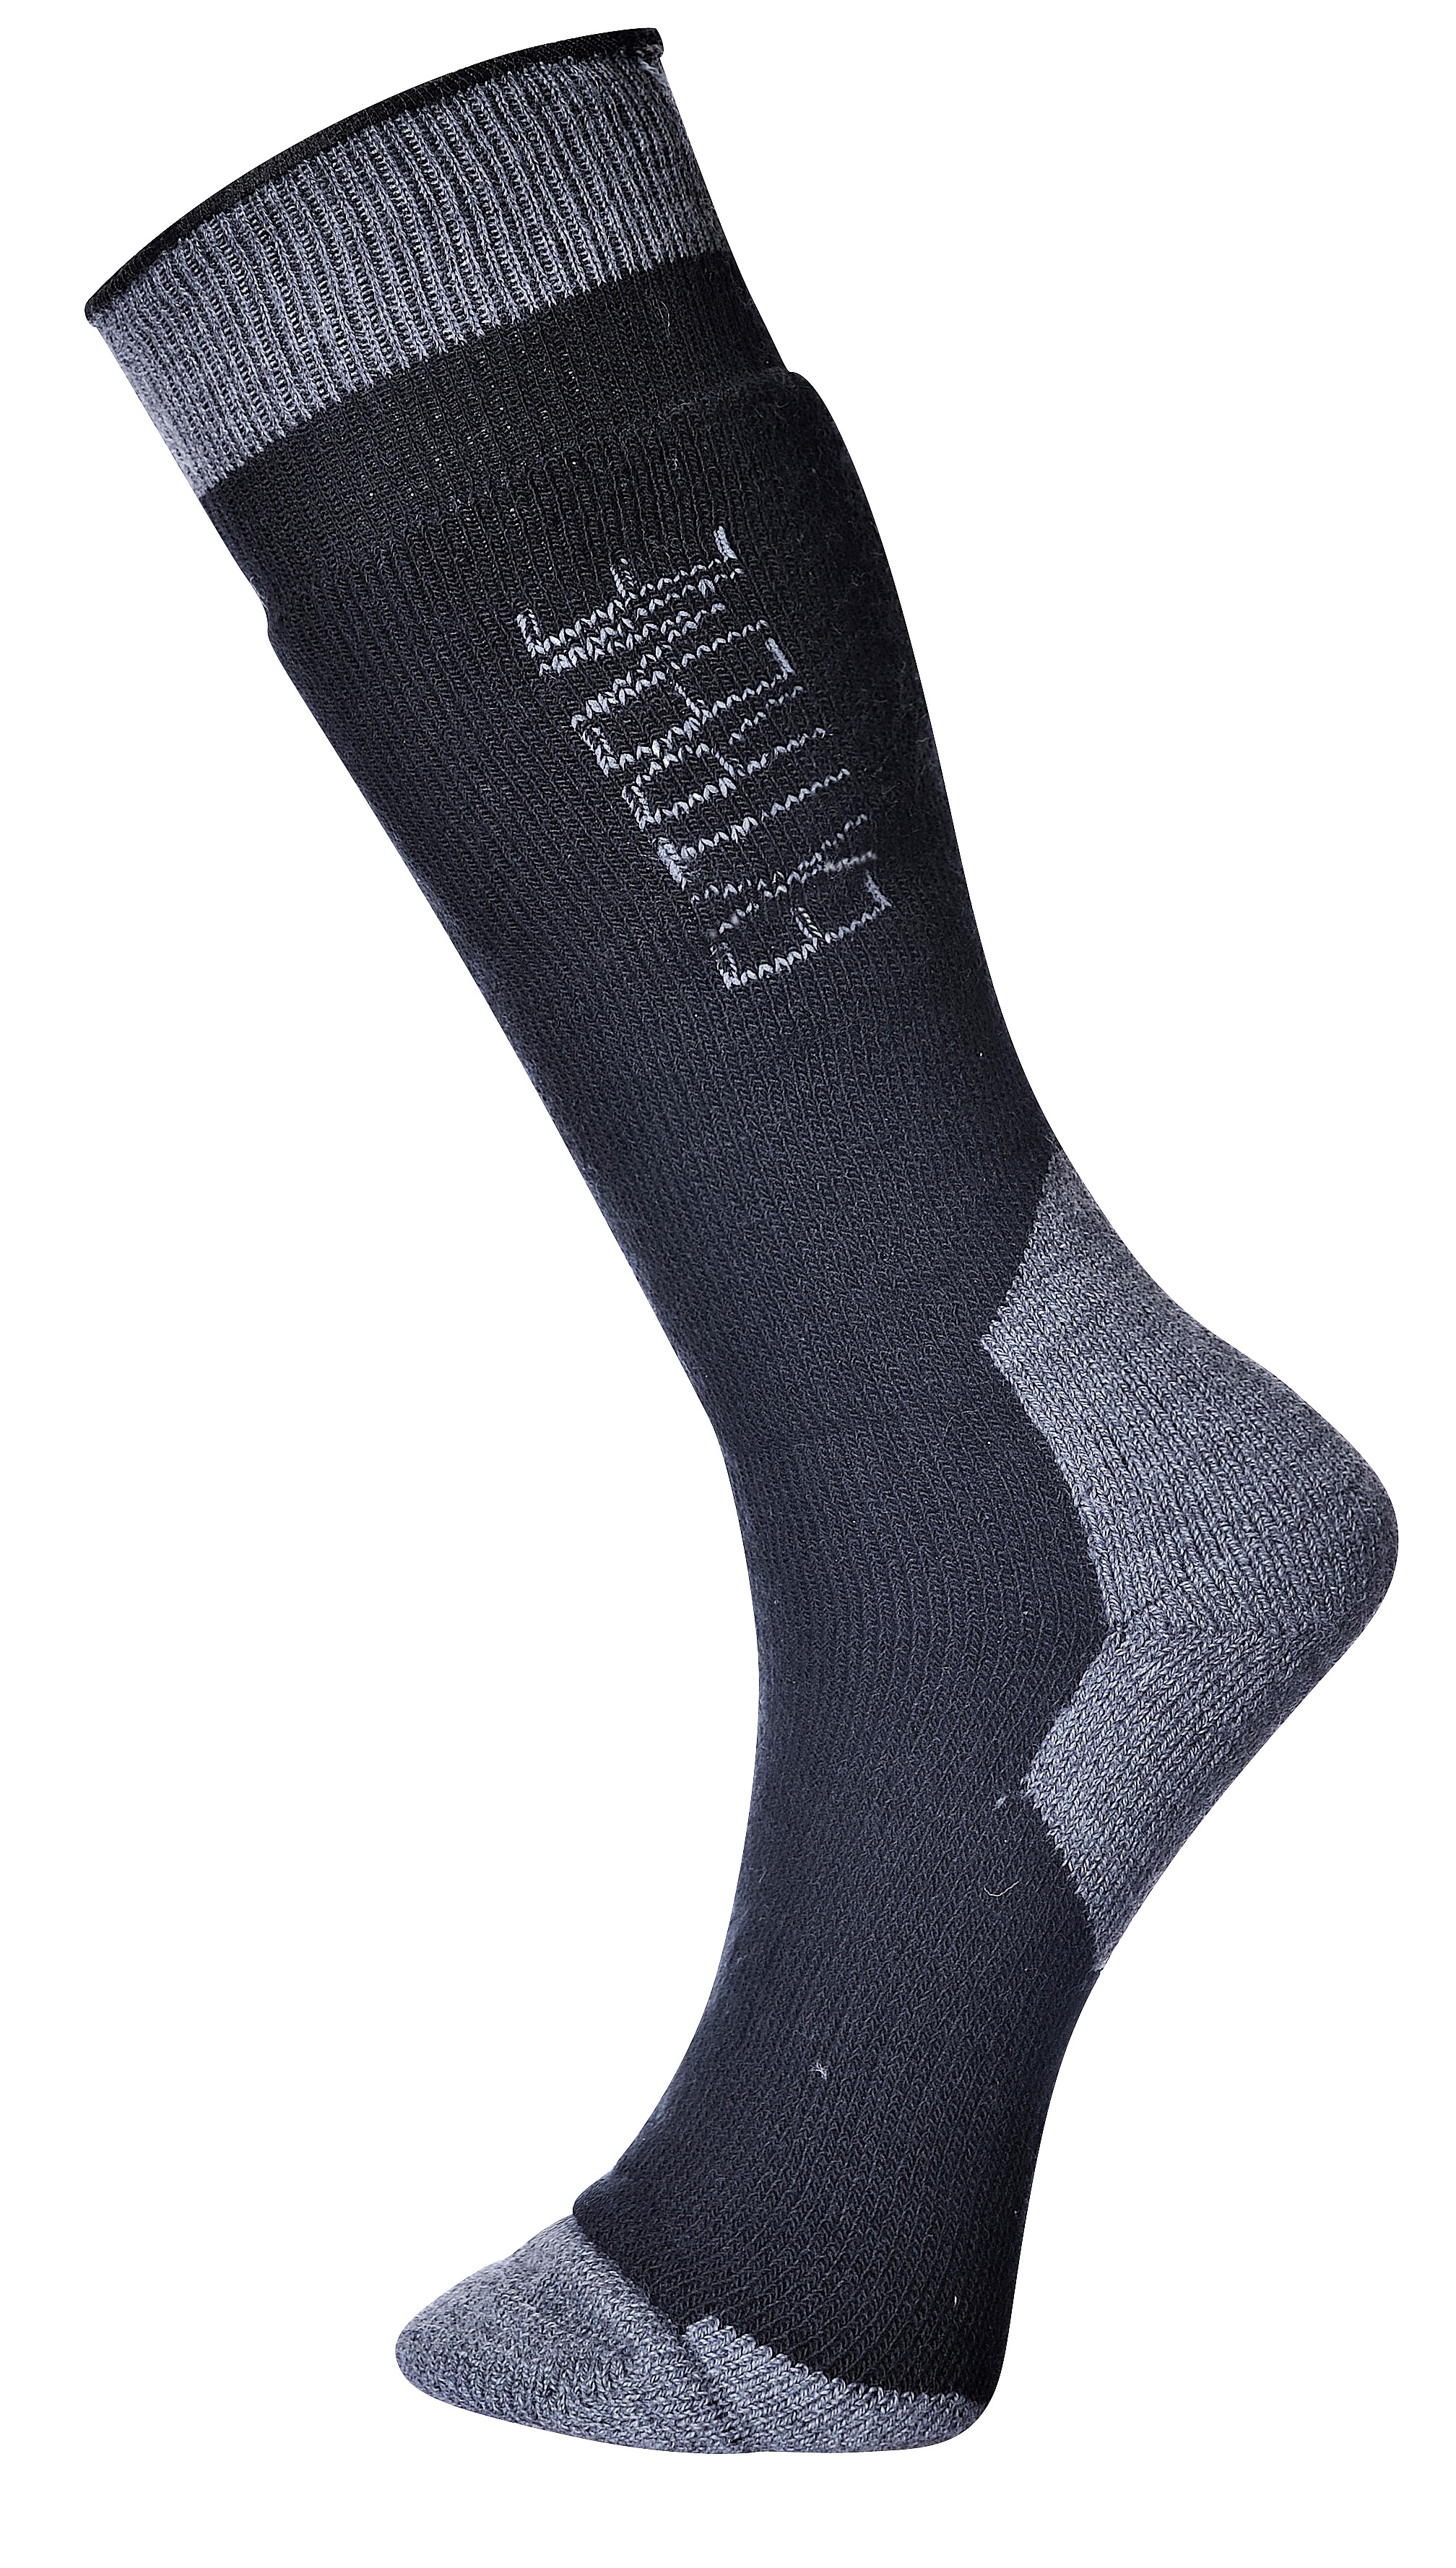 Extreme sokker til ekstremt vejr - Sort - Strømper - SikkerhedsGiganten